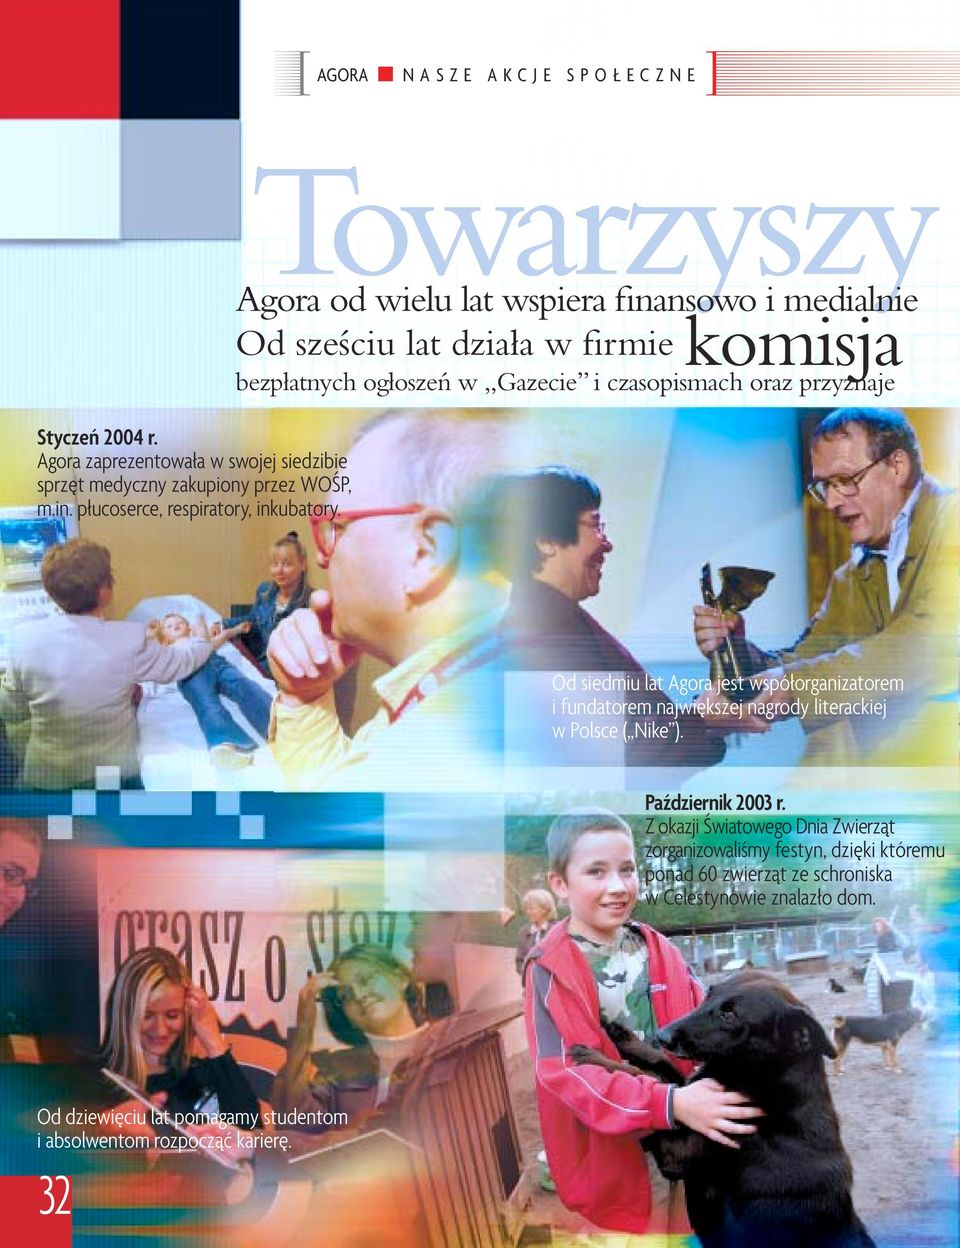 Od siedmiu lat Agora jest współorganizatorem i fundatorem największej nagrody literackiej w Polsce ( Nike ). Październik 2003 r.